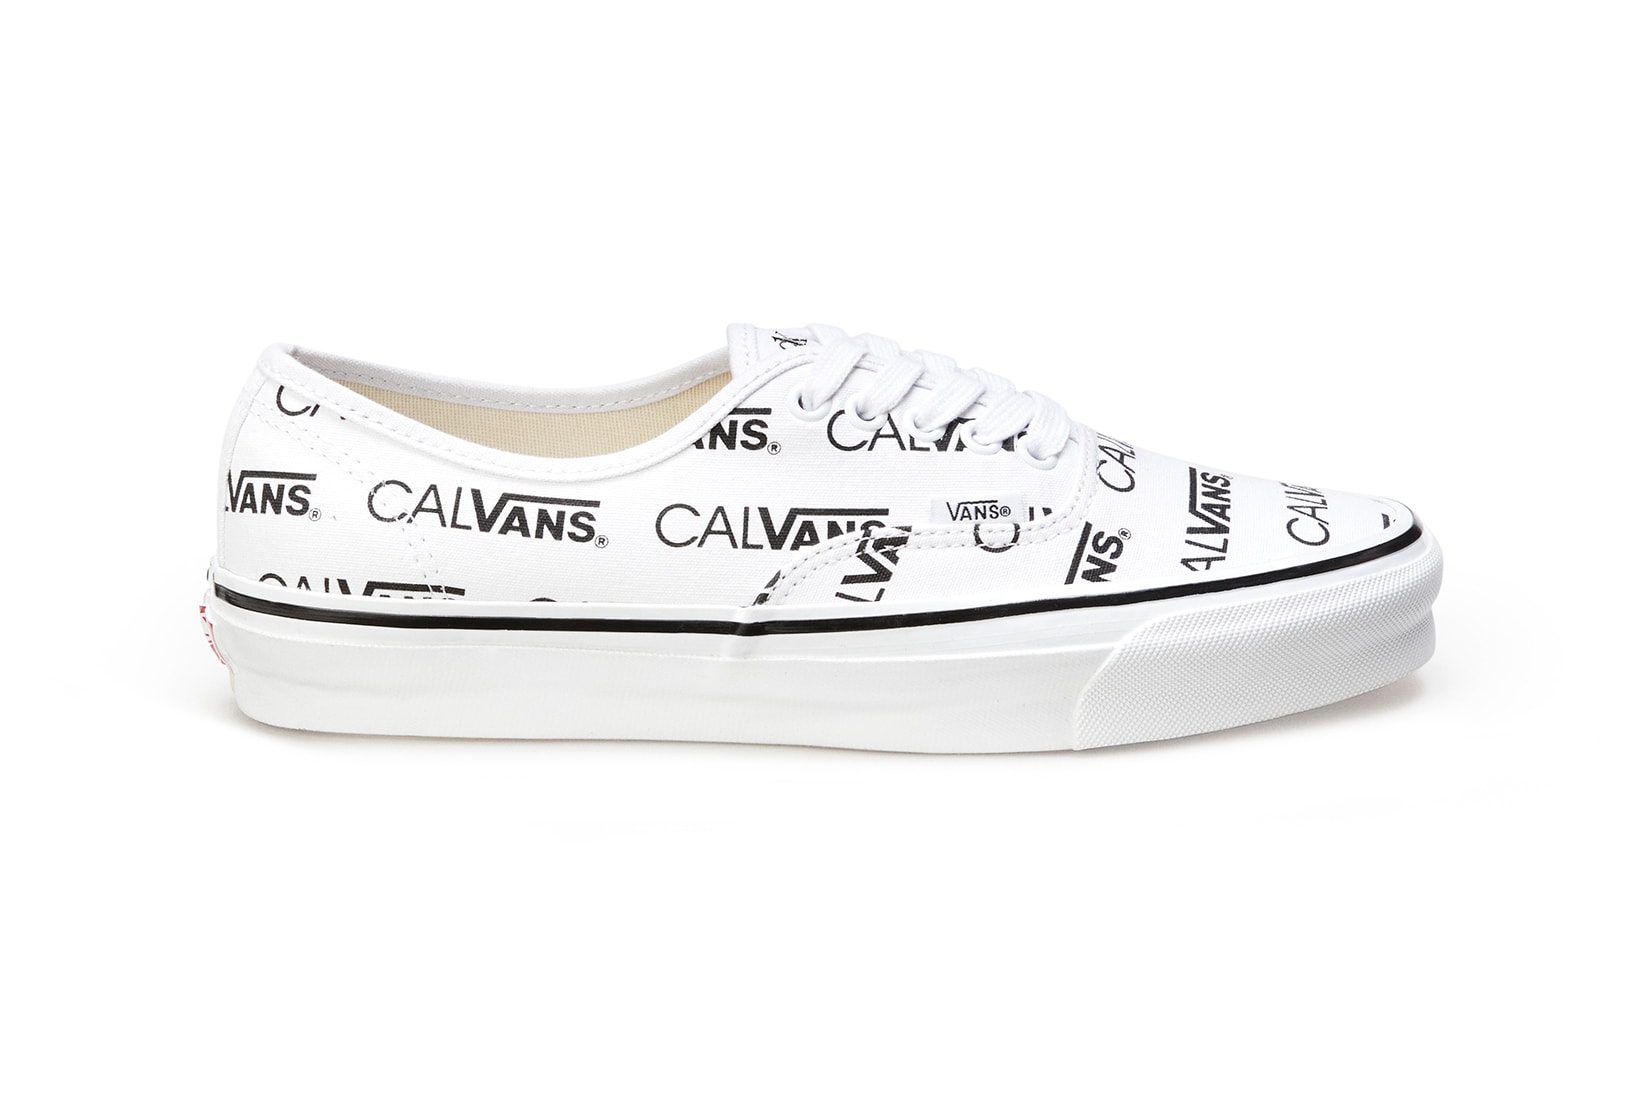 Calvin Klein Palace Vans Authentic Calvans Sneakers Collaboration Shoes Kicks